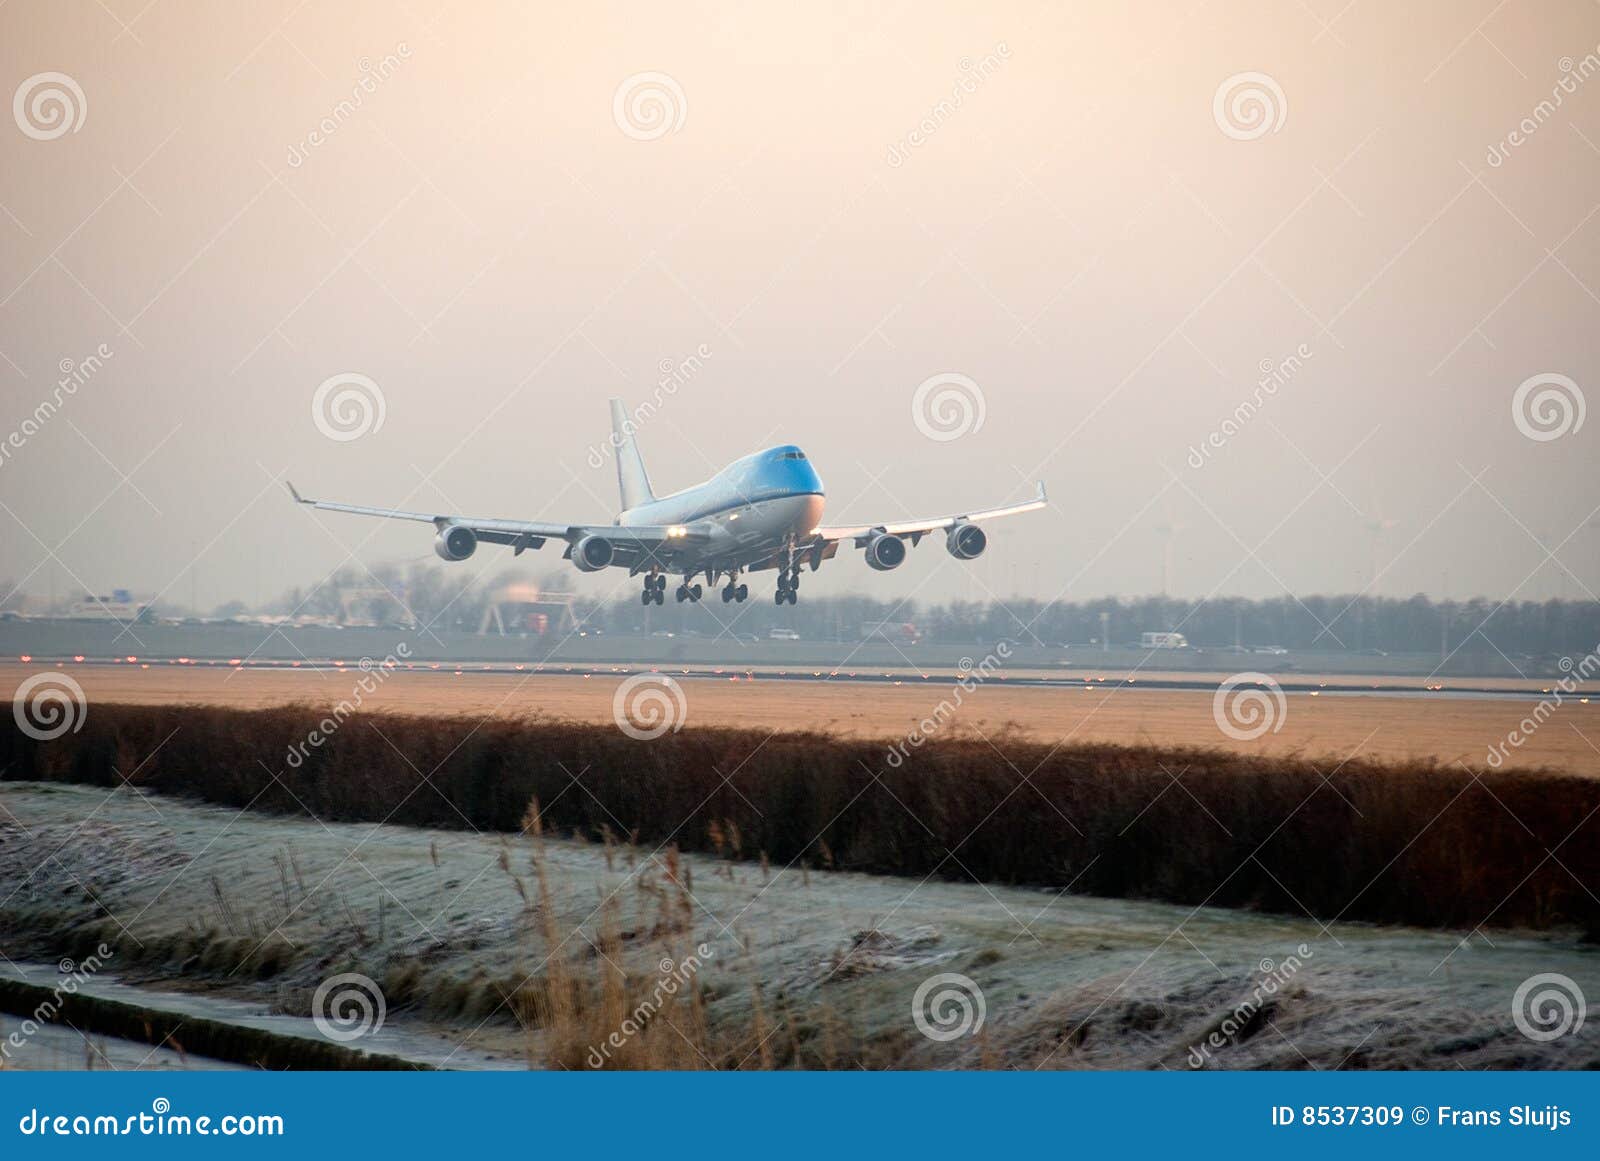 plane landing